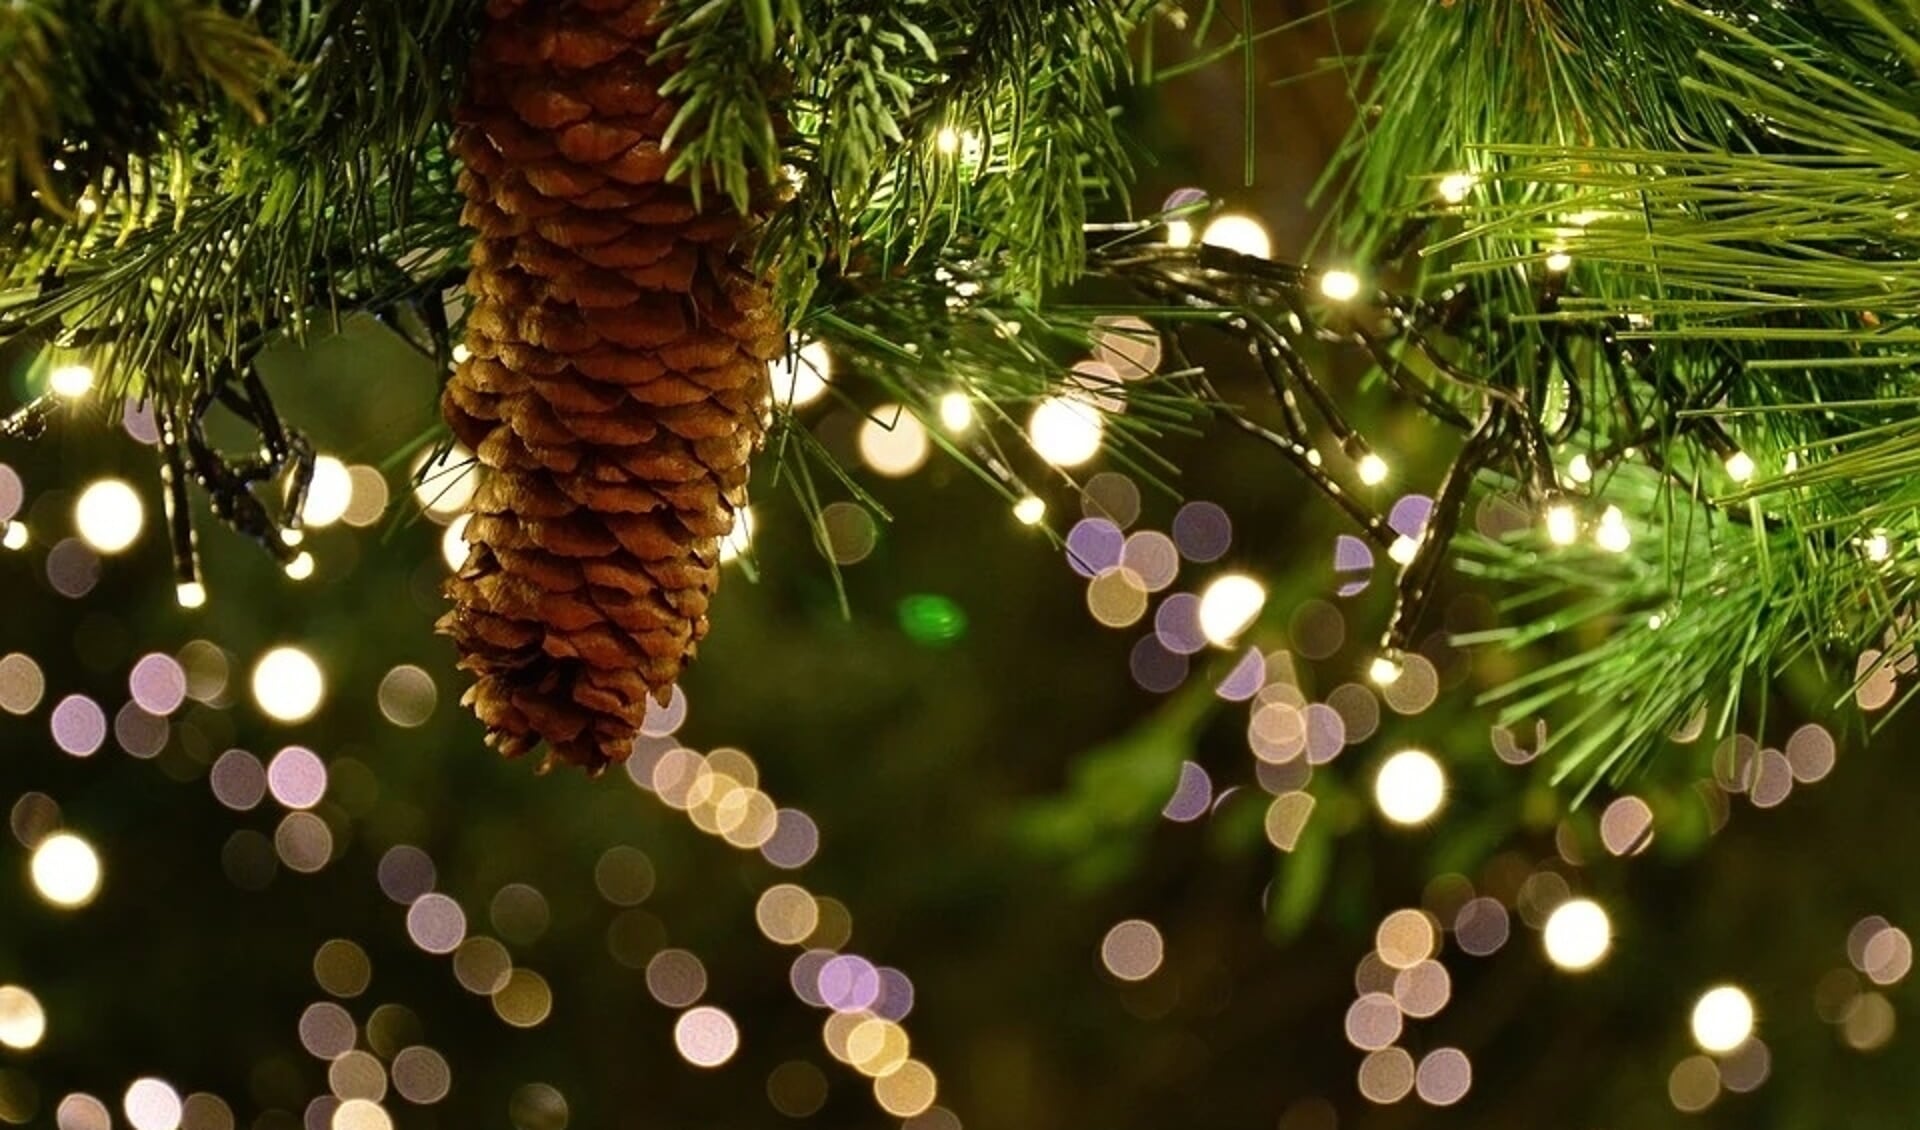 Er komt een kerst-wensboom te staan waarin iedereen zijn of haar wens kan hangen.